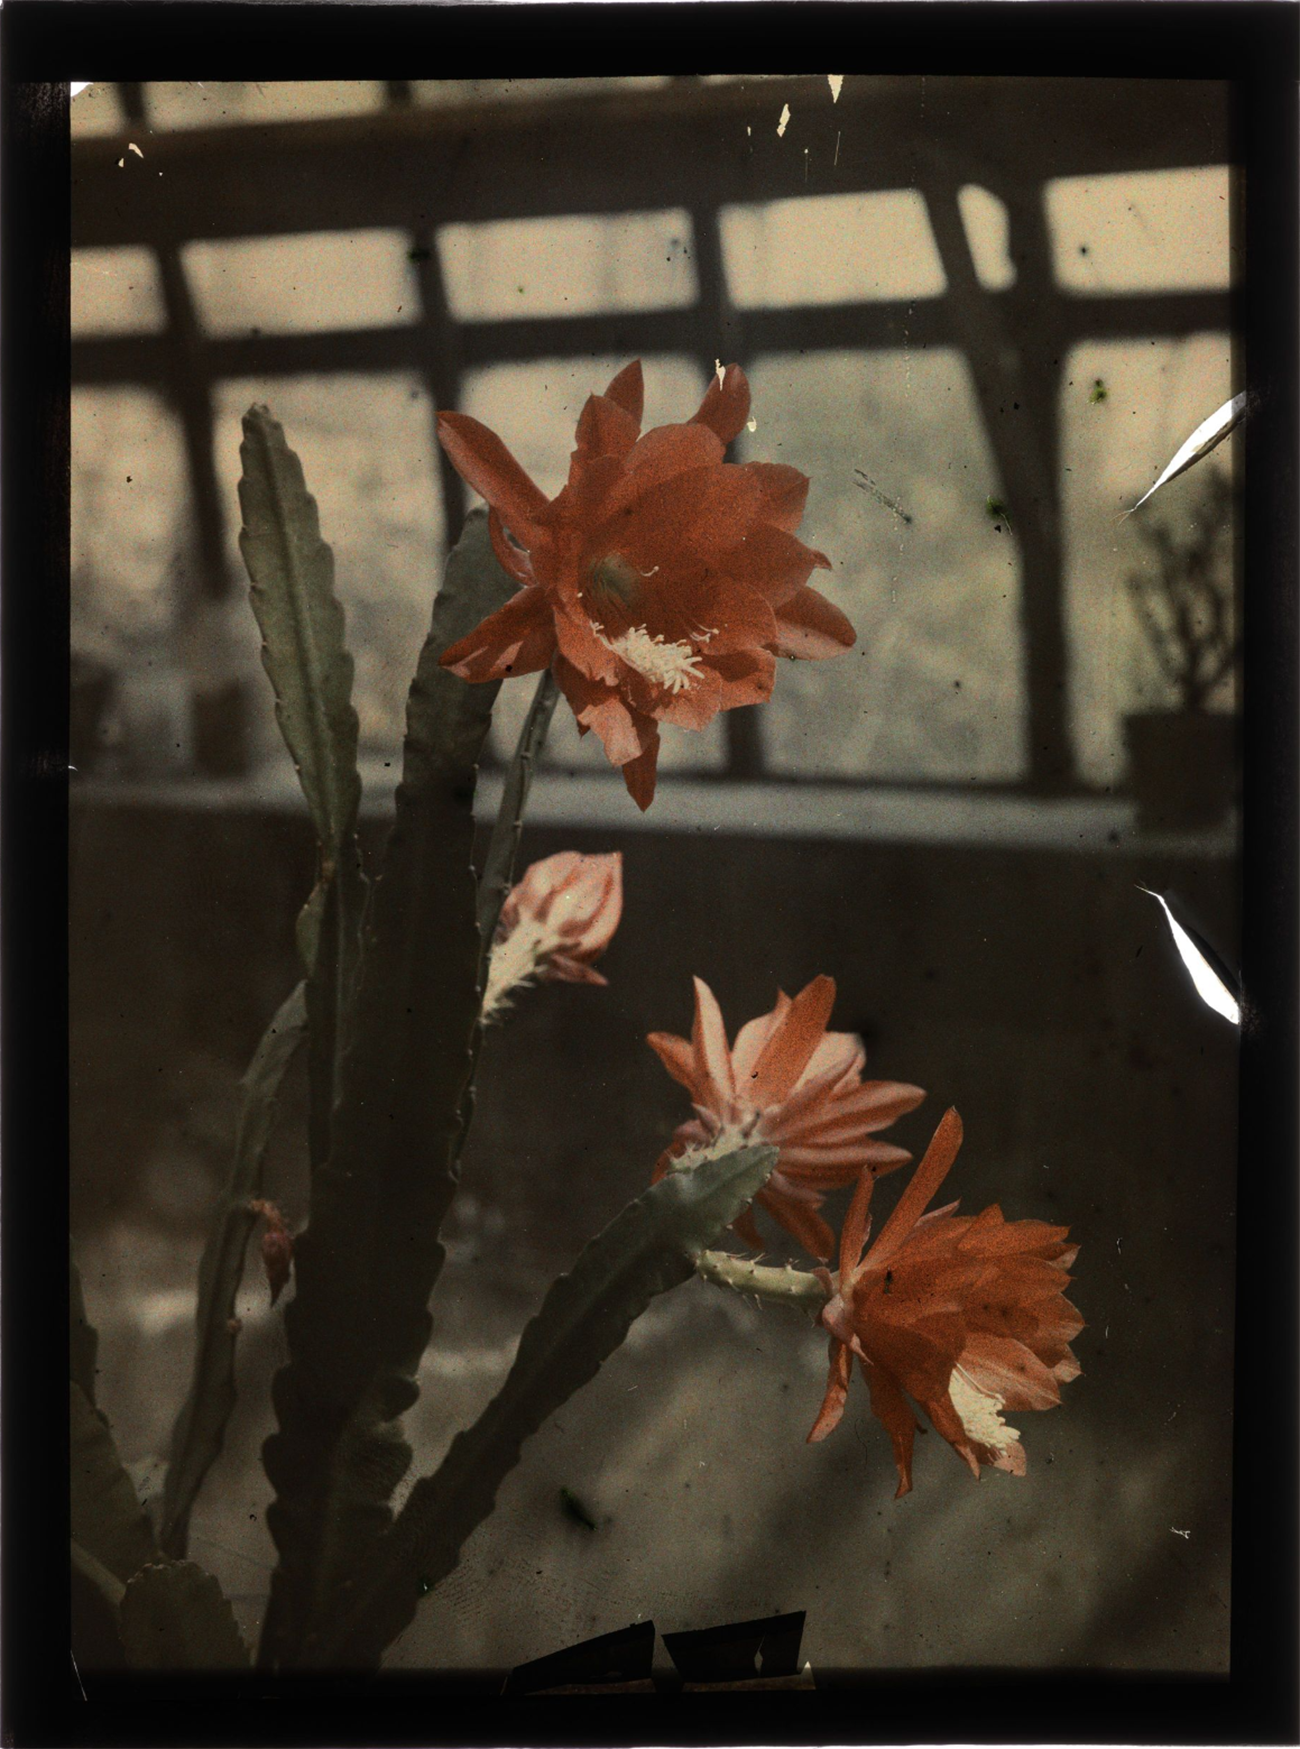 Jan Zdzisław Włodek :: Kaktus kwitnący na czerwono, 1927. Autochrome photograph of a blooming Epiphyllum cactus in the greenhouse of the Włodków villa in Kraków. | src Fundacja im. Zofii i Jana Włodków